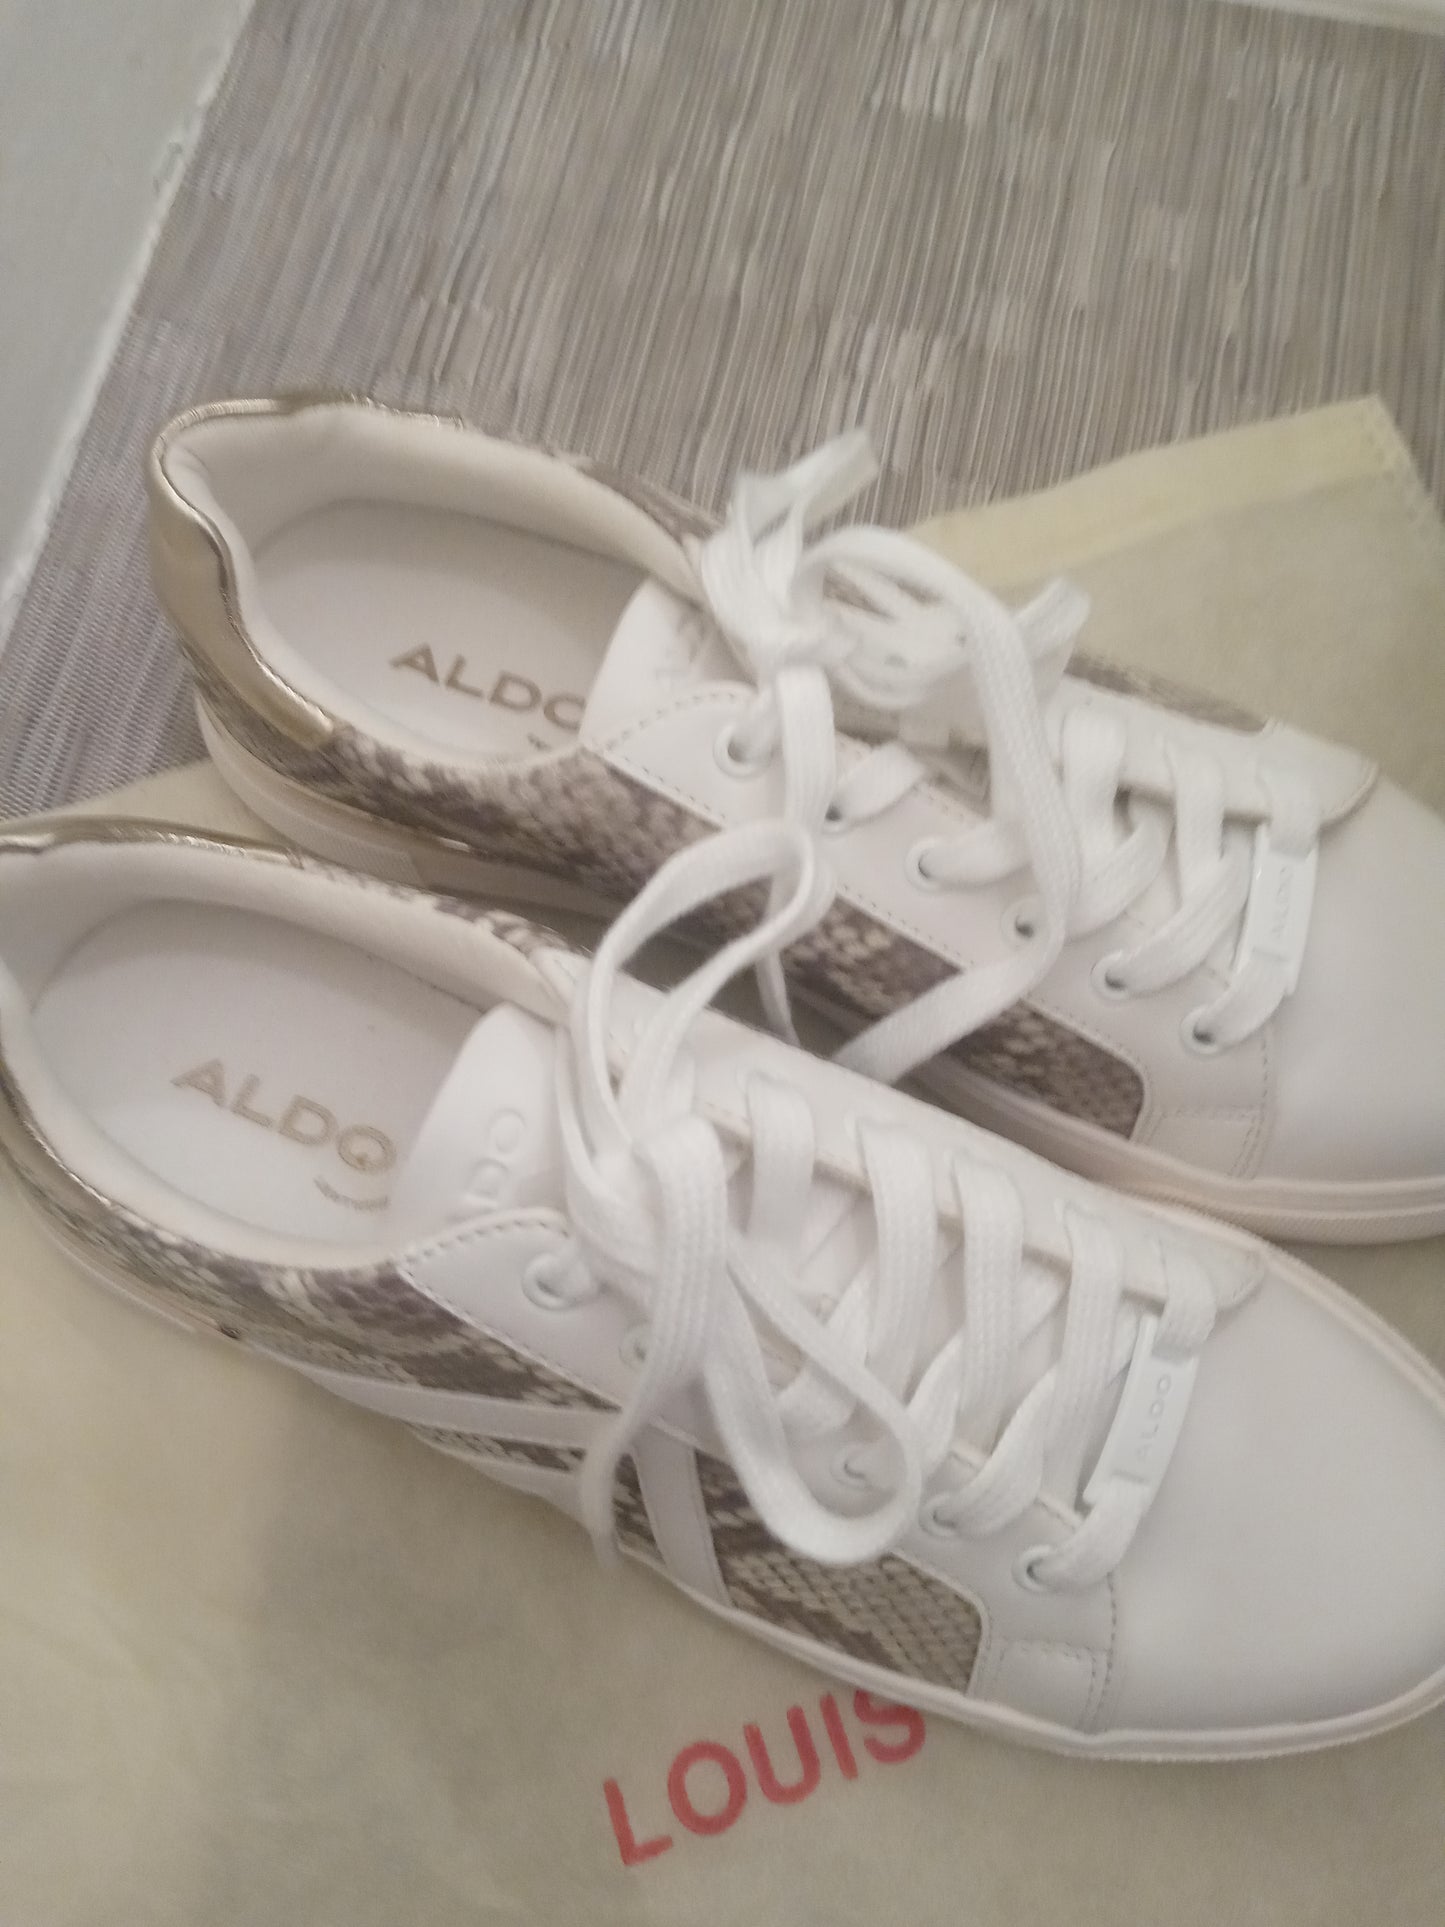 Aldo Fran Sneakers Size 7.5